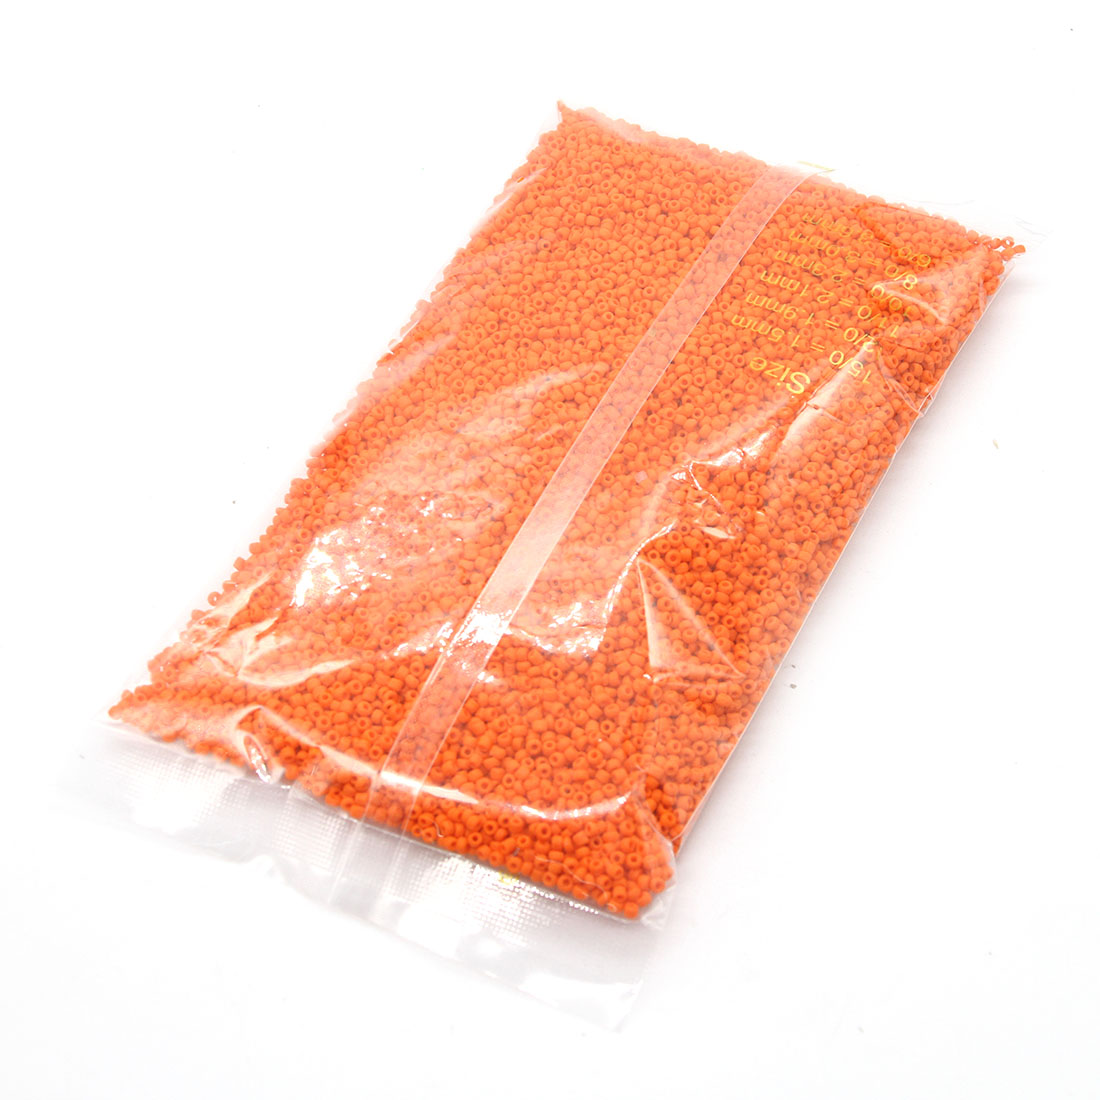 Deep orange 3mm 10,000 packs